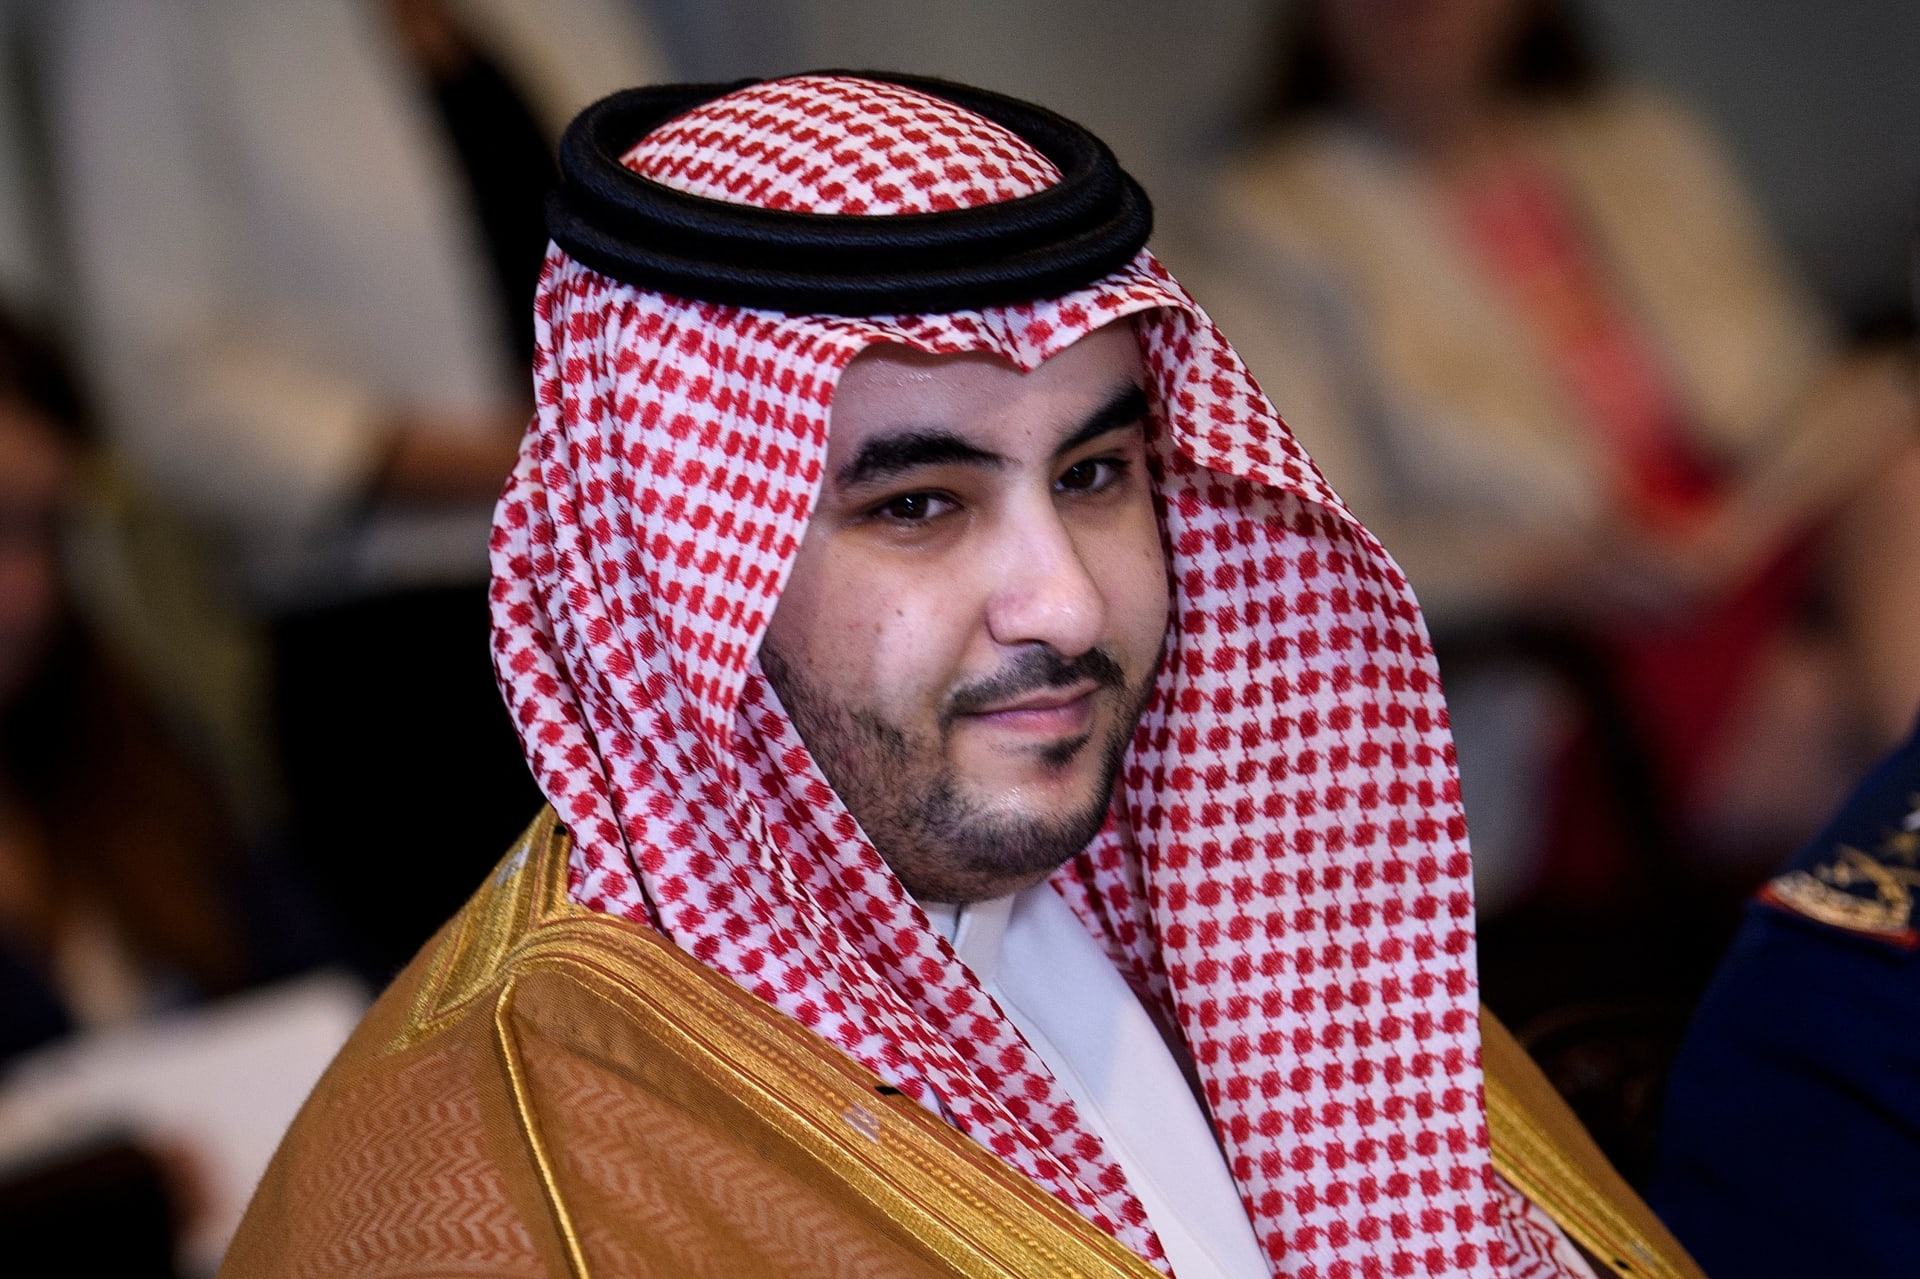 الأمير خالد بن سلمان نائب وزير الدفاع السعودي